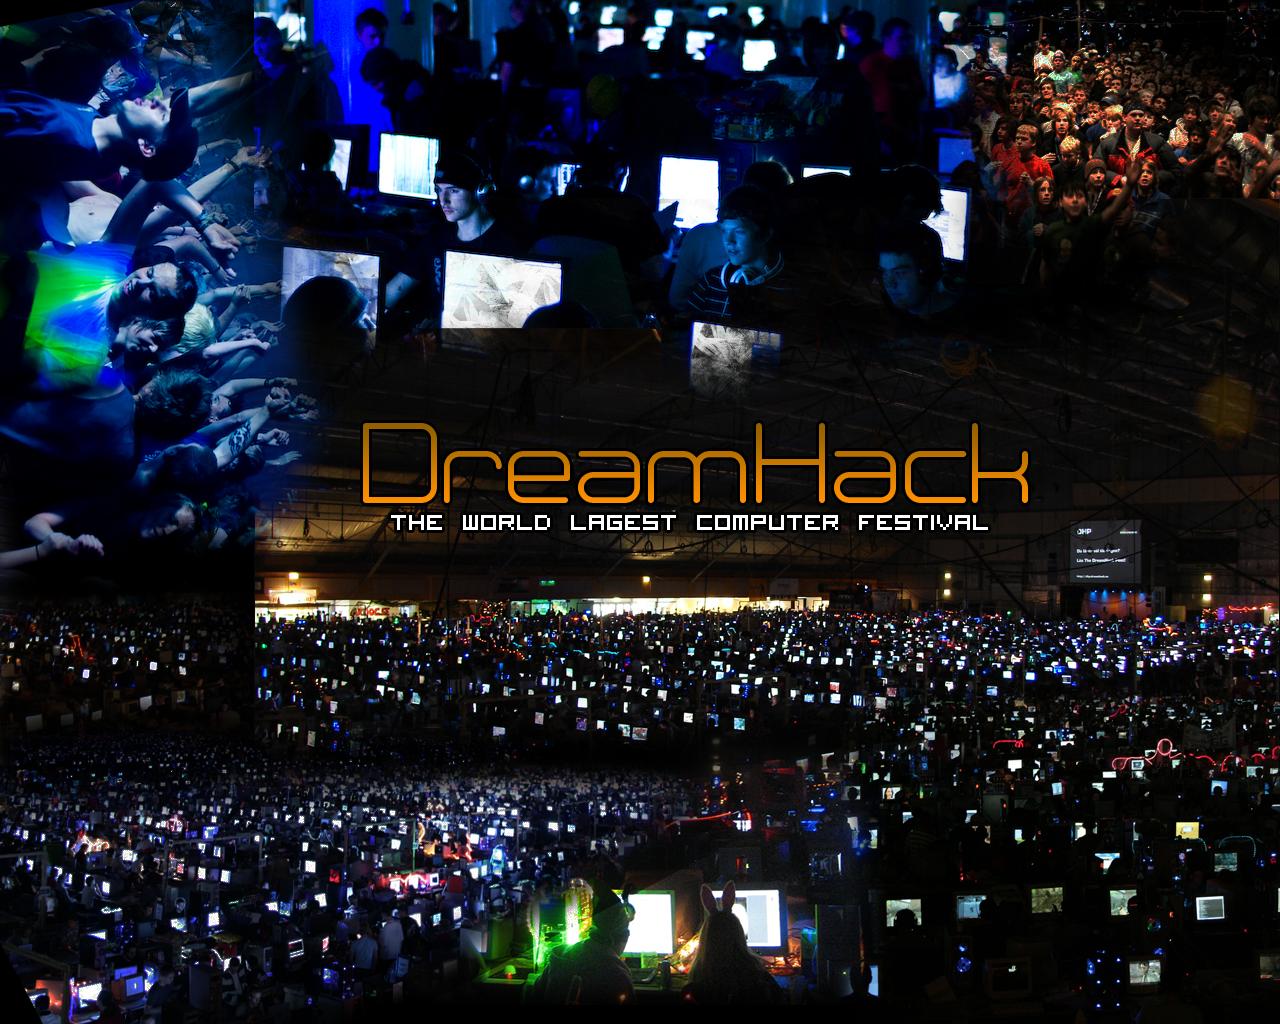 Dreamhack 2015